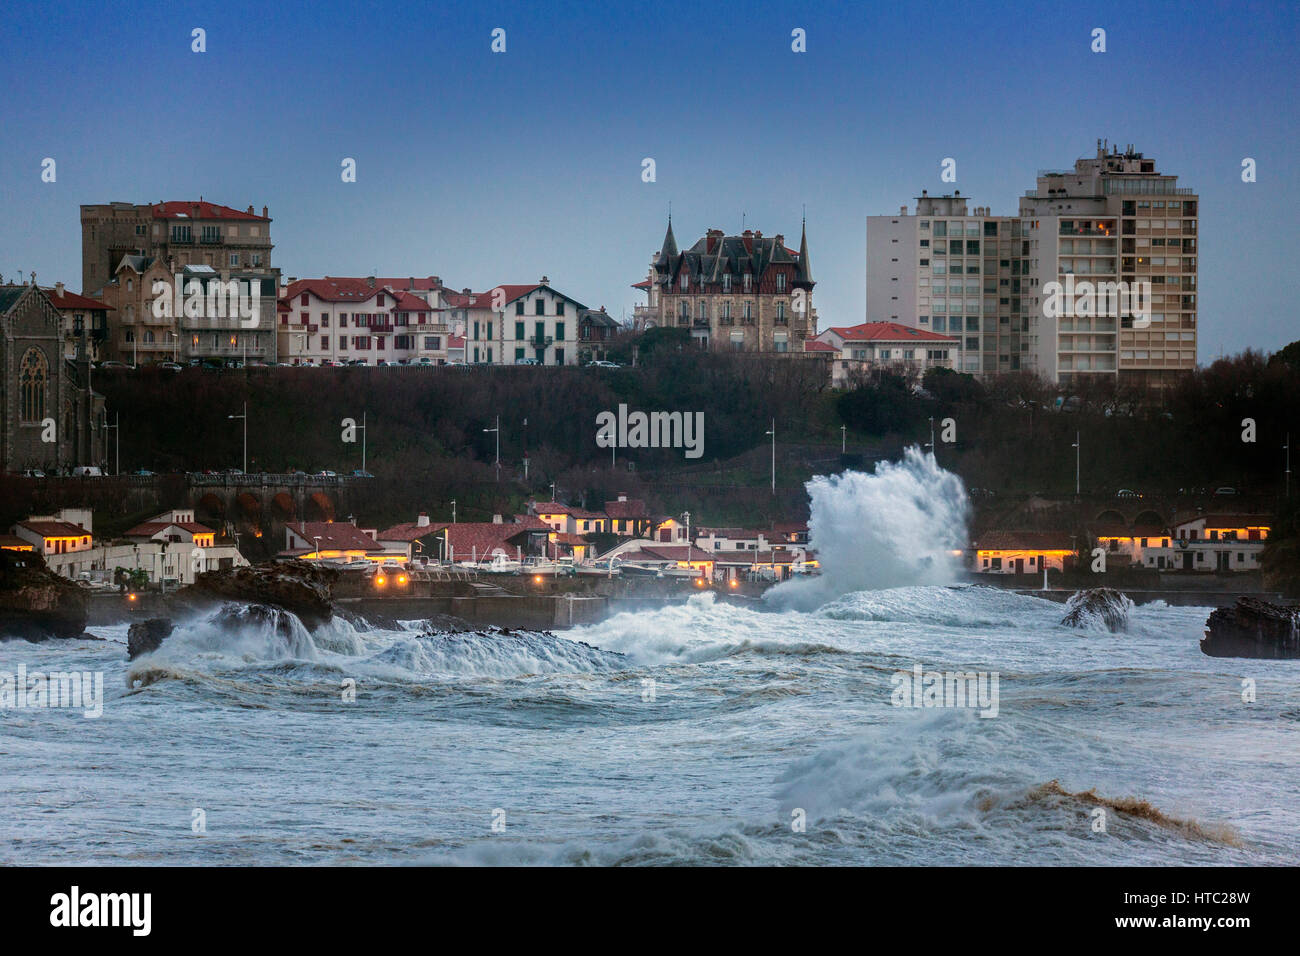 La ville de Biarritz par un jour de tempête ( Pyrénées Atlantiques - France). Ville de Biarritz un jour de tempête (Pyrénées-Atlantiques - Aquitaine - France). Banque D'Images